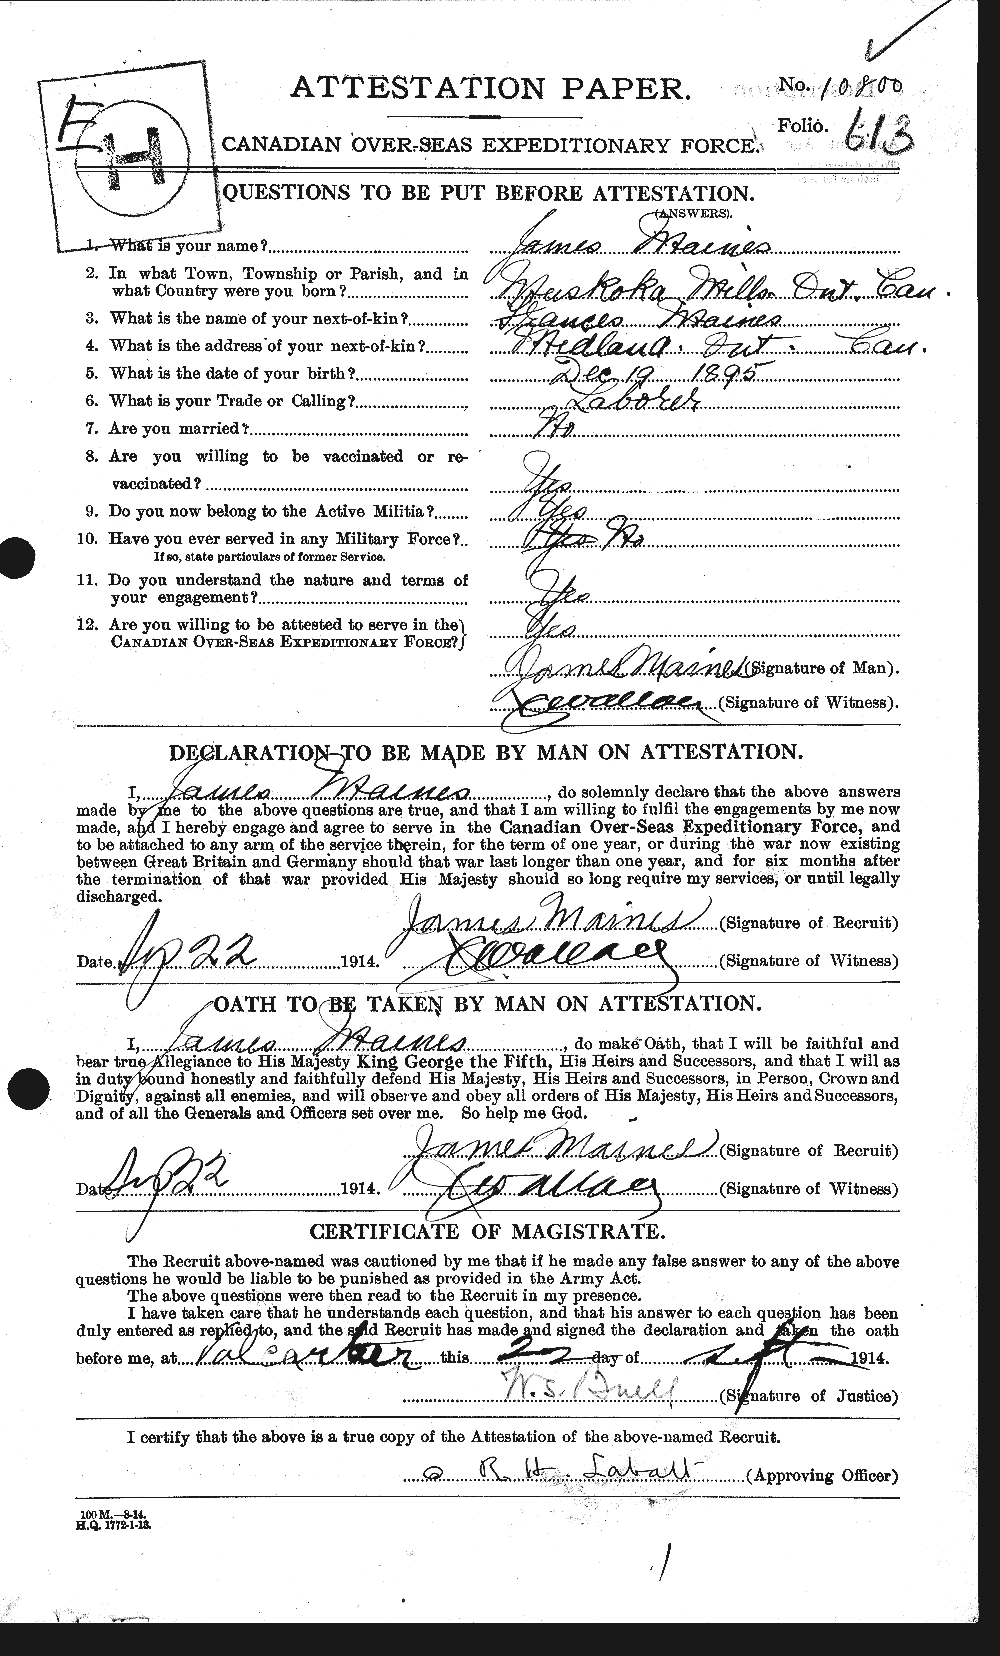 Dossiers du Personnel de la Première Guerre mondiale - CEC 471481a